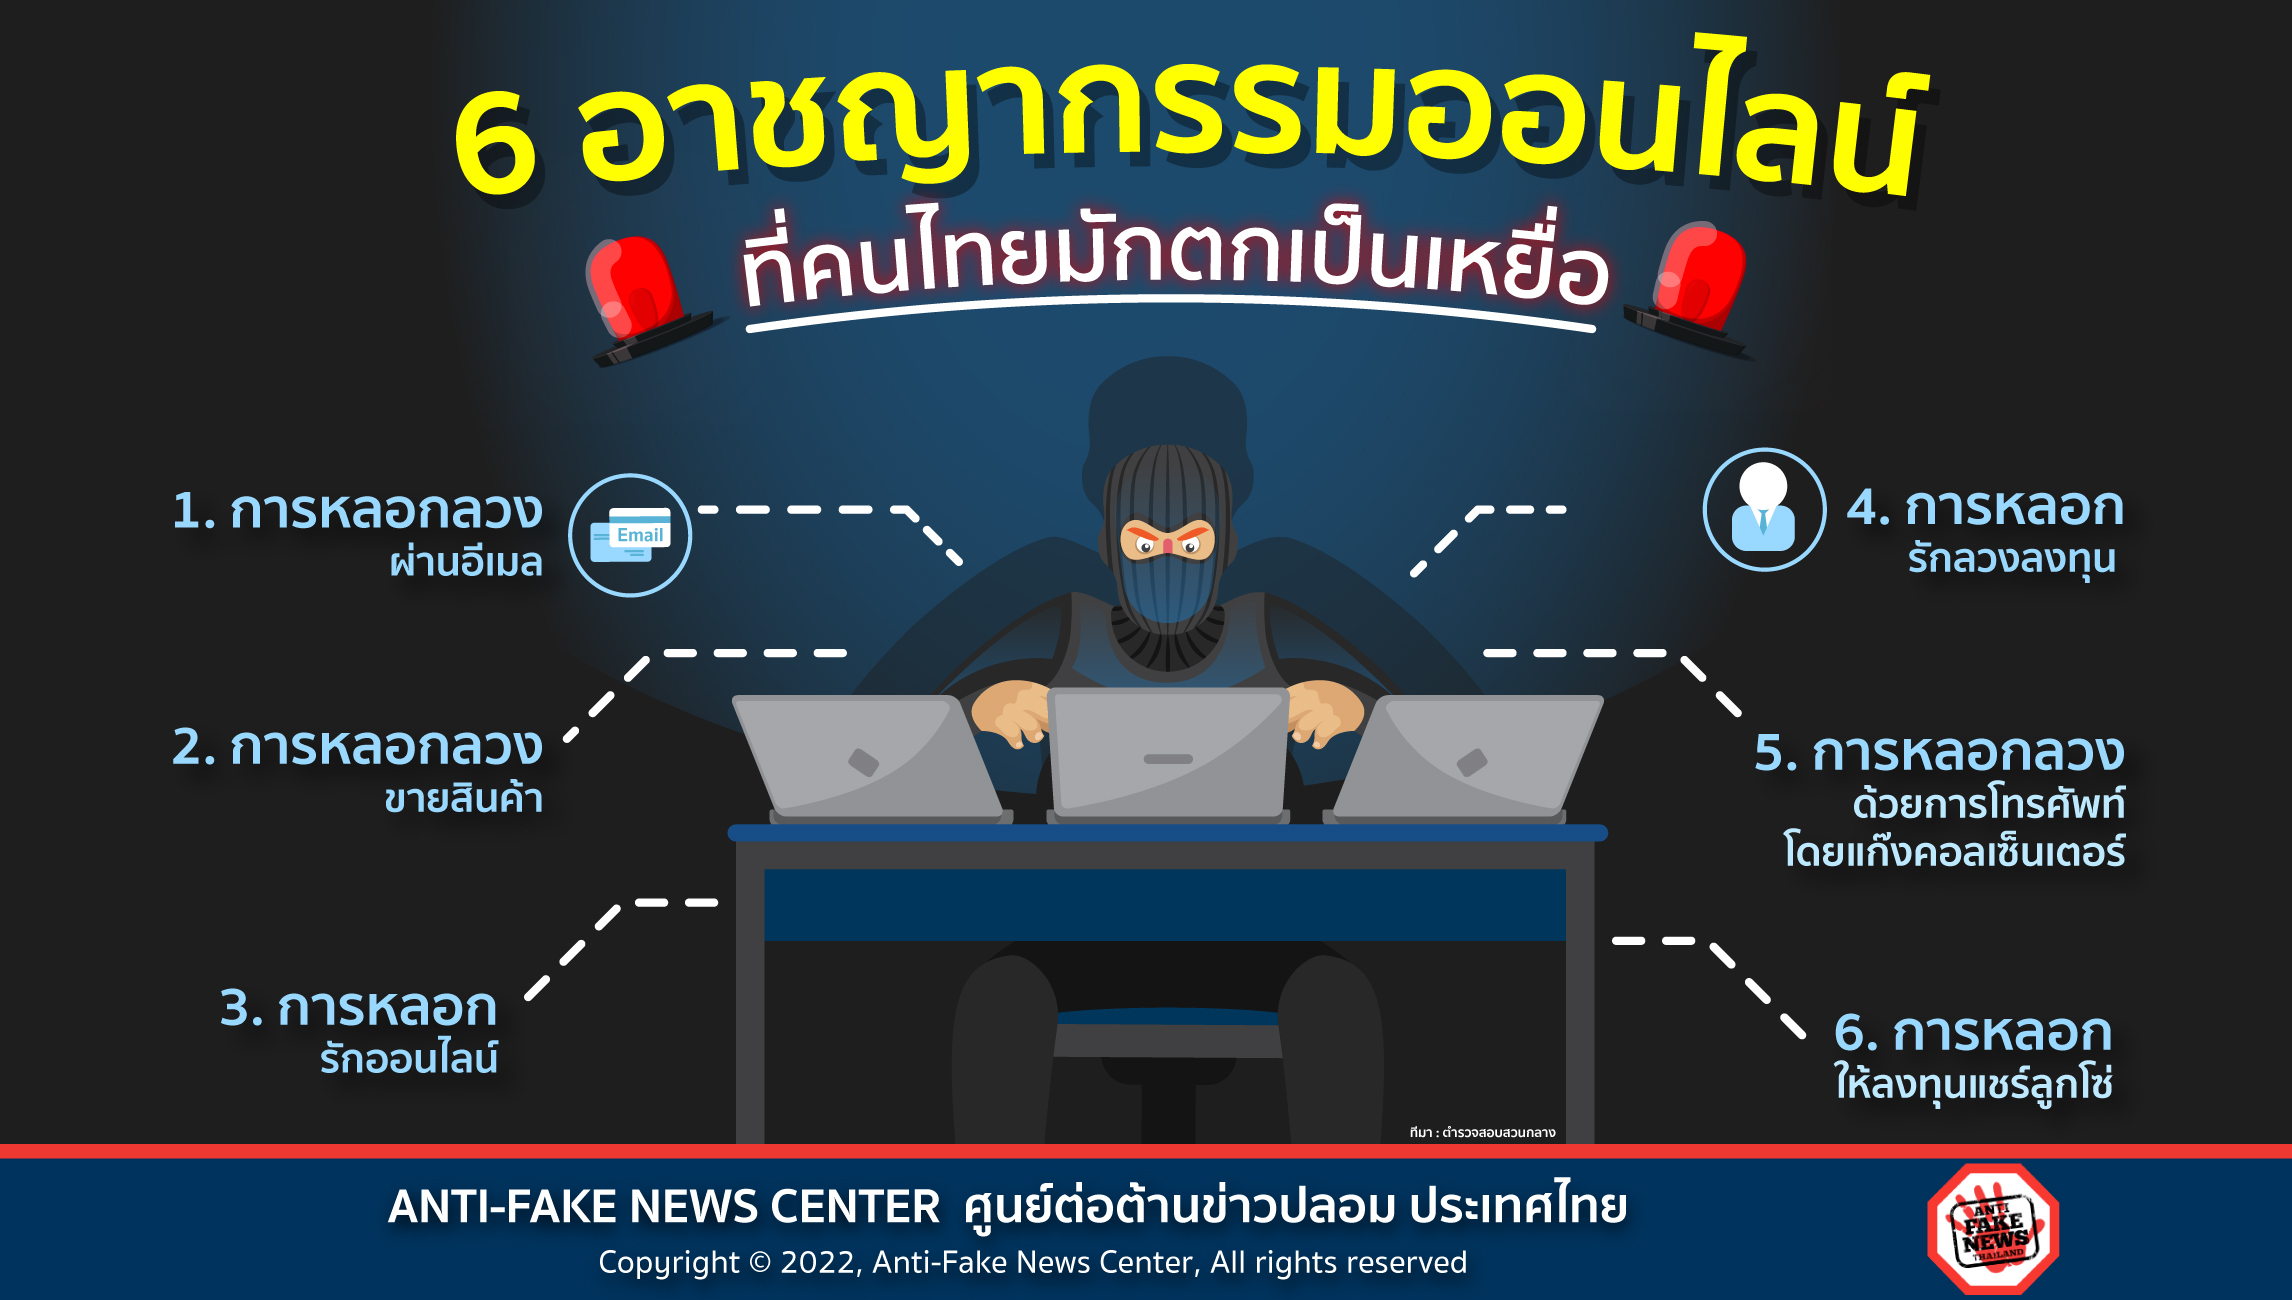 22 Feb 22 6 อาชญากรรมออนไลน์ ที่คนไทยมักตกเป็นเหยื่อ Web